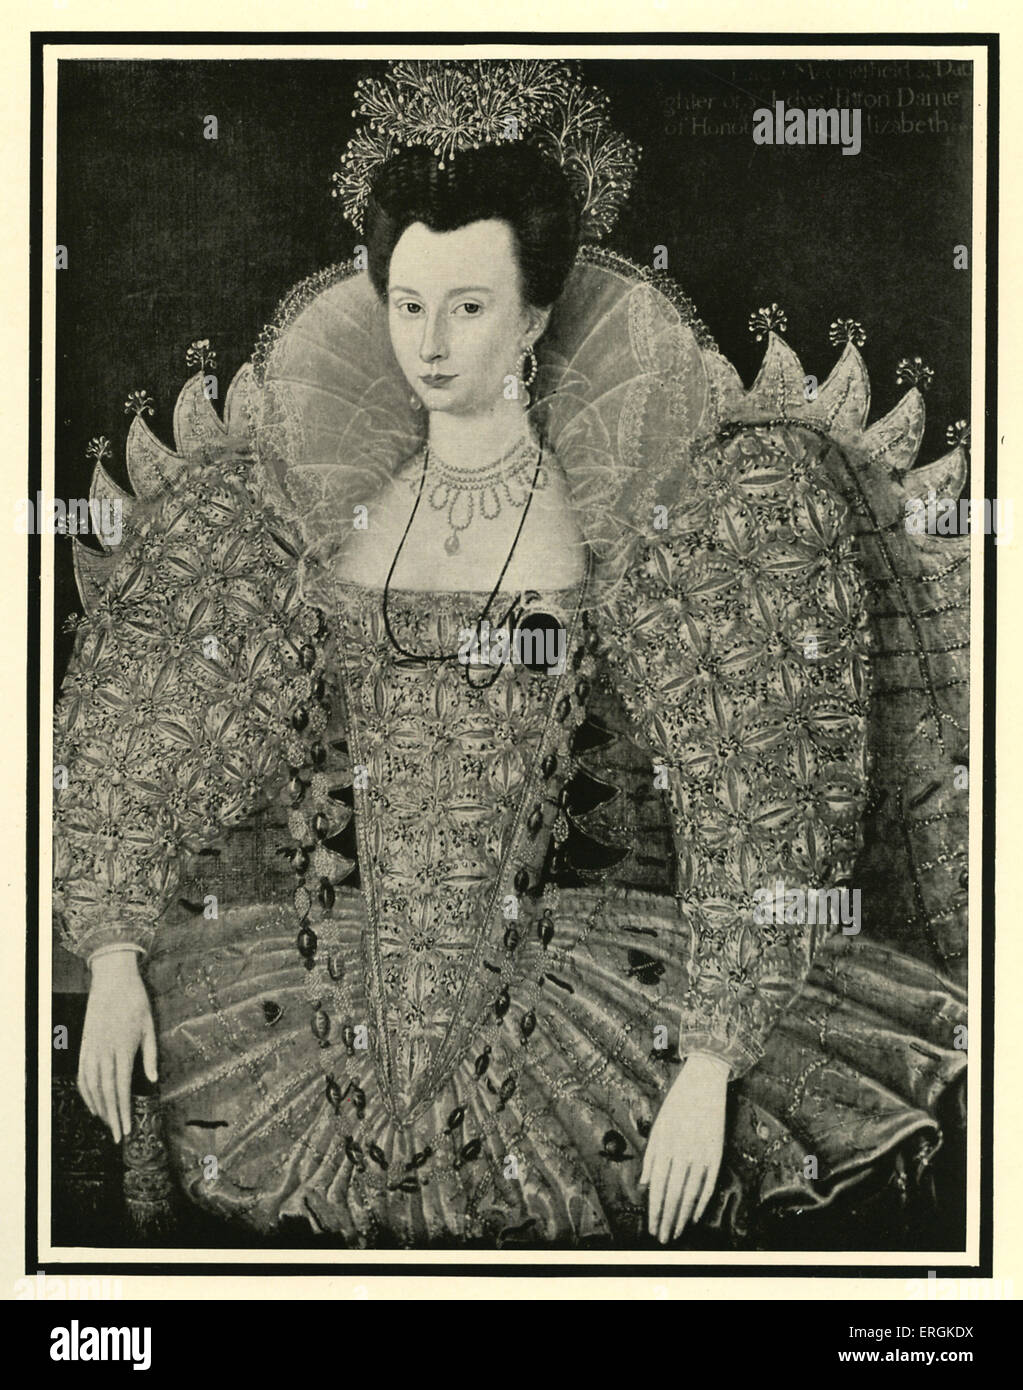 Se marier Fitton (1578-1647), d'après une peinture achevée en 1596. Fitton est parfois reconnu comme le 'Dark Lady' des sonnets de Shakespeare. Banque D'Images